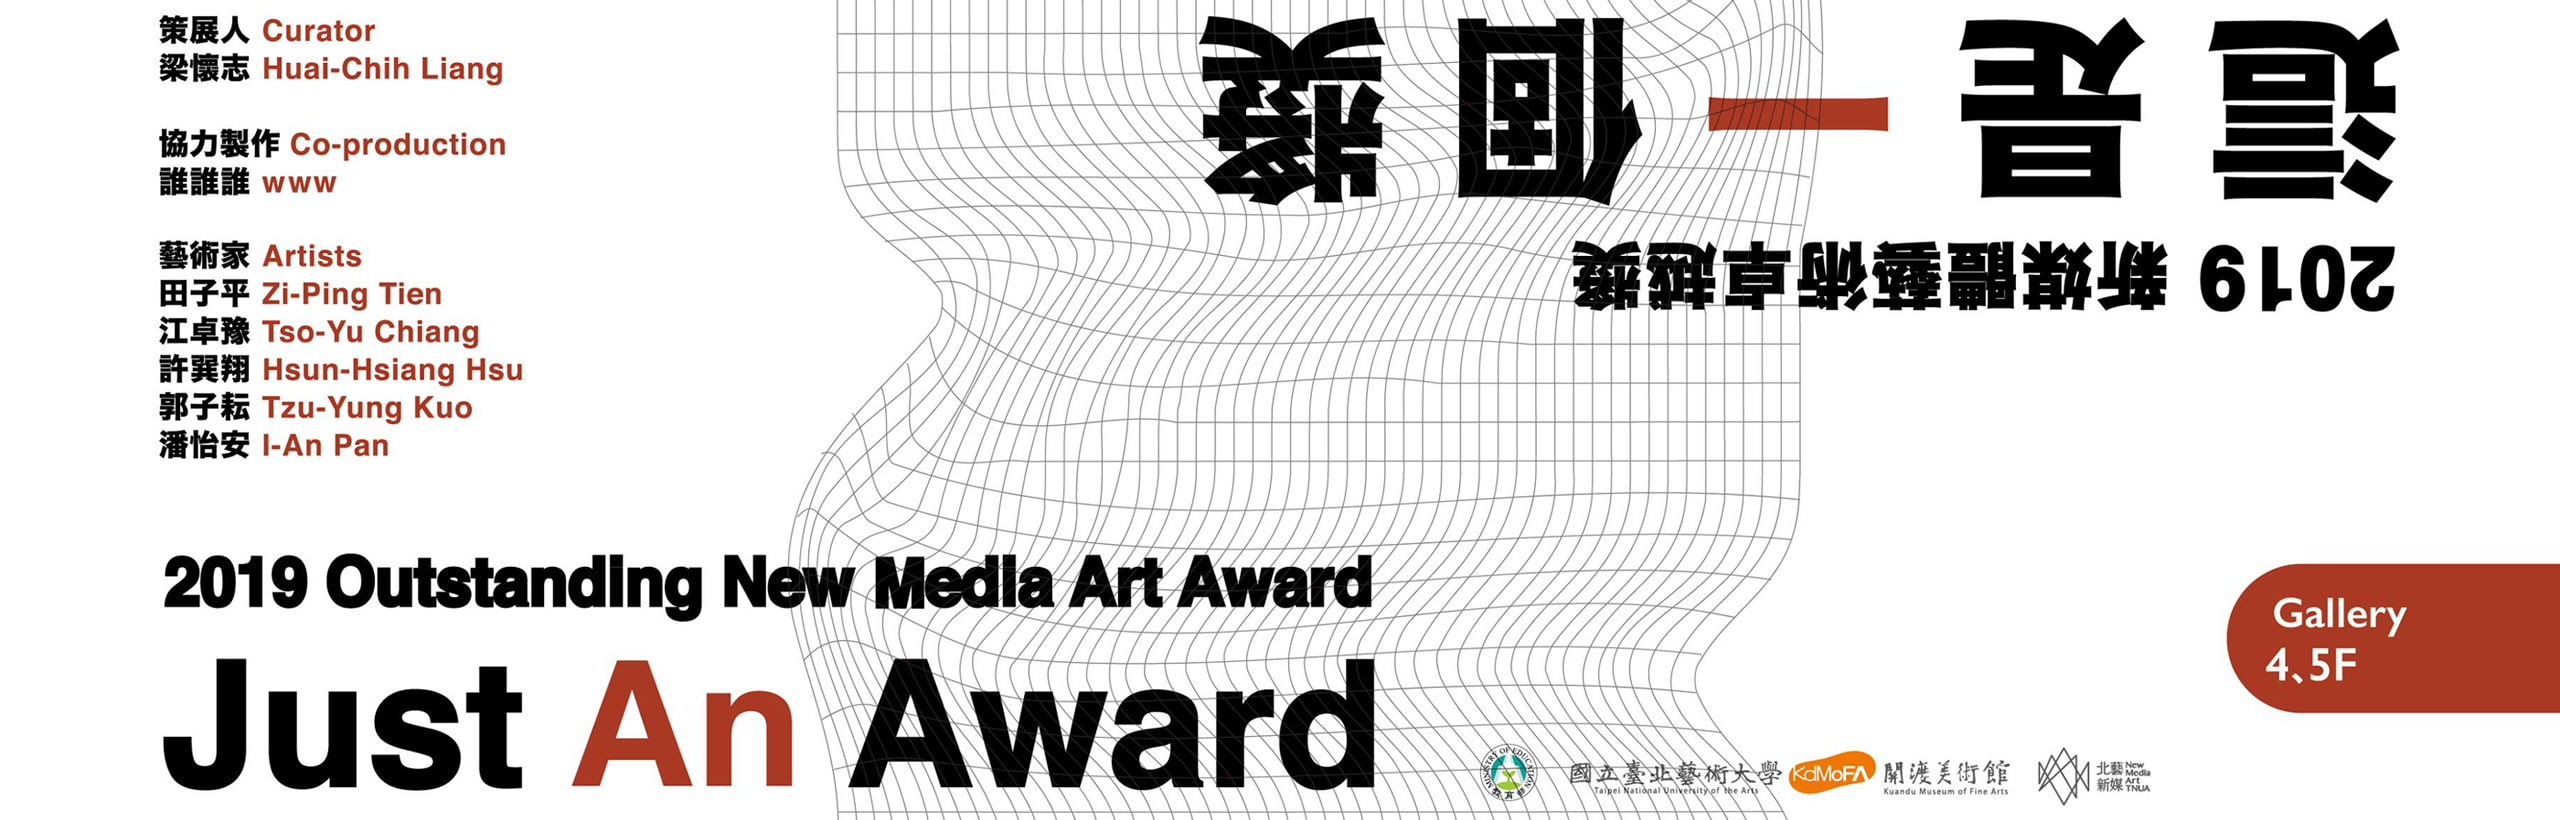 2019 Outstanding New Media Art Award-Just An Award